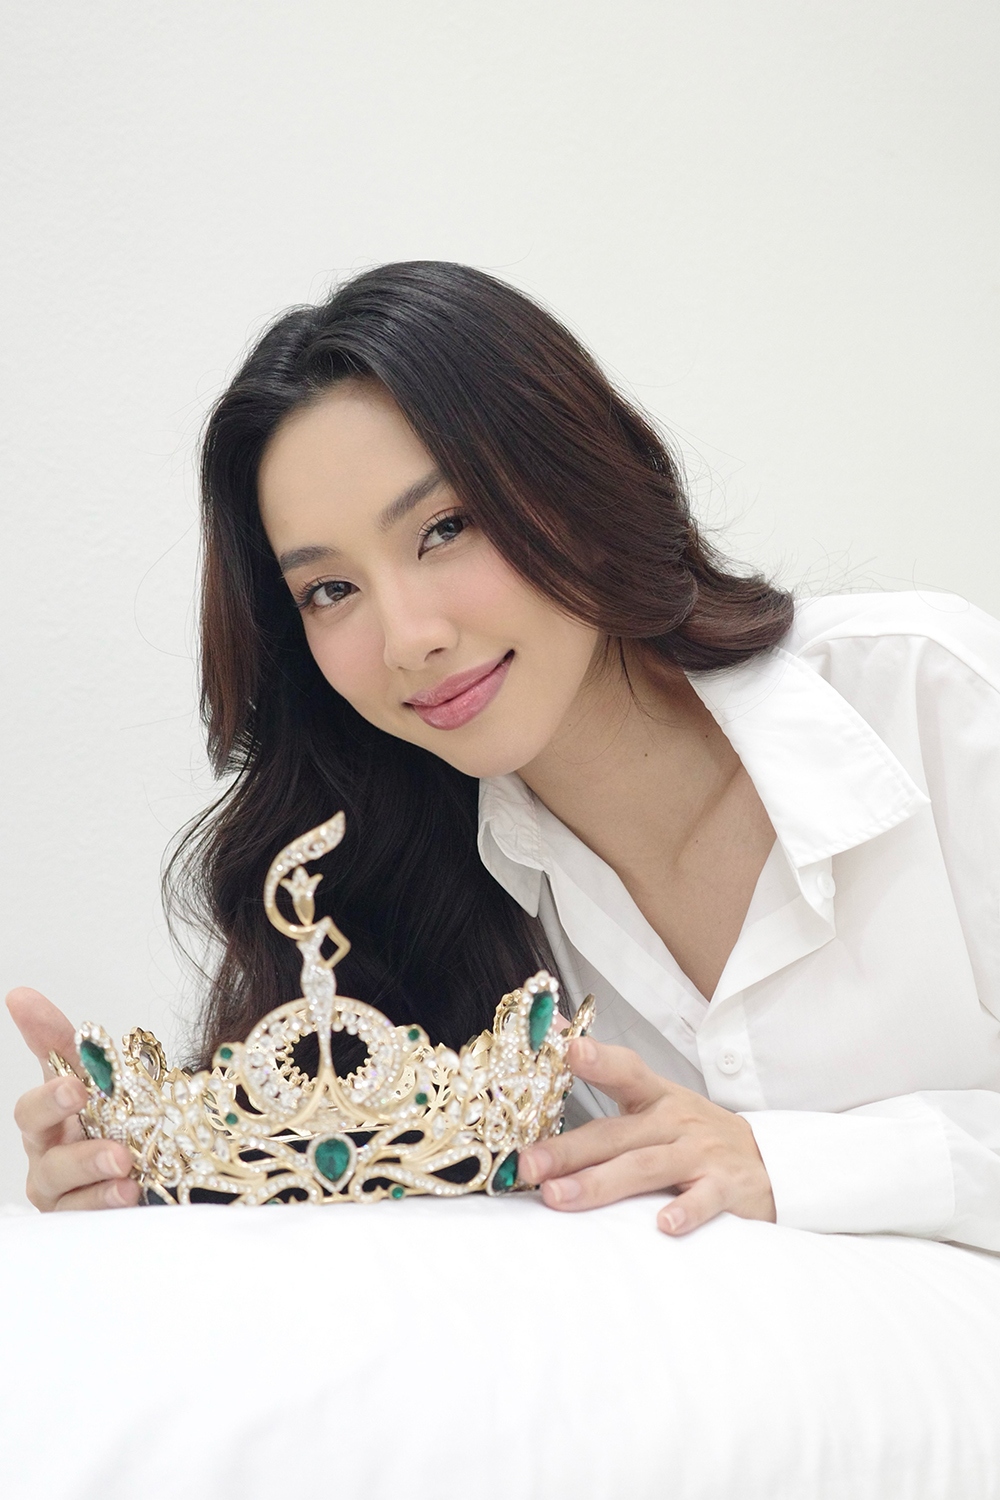 Hoa hậu Thùy Tiên đẹp dịu dàng trong bộ ảnh kỷ niệm 2 năm đăng quang - Ảnh 6.